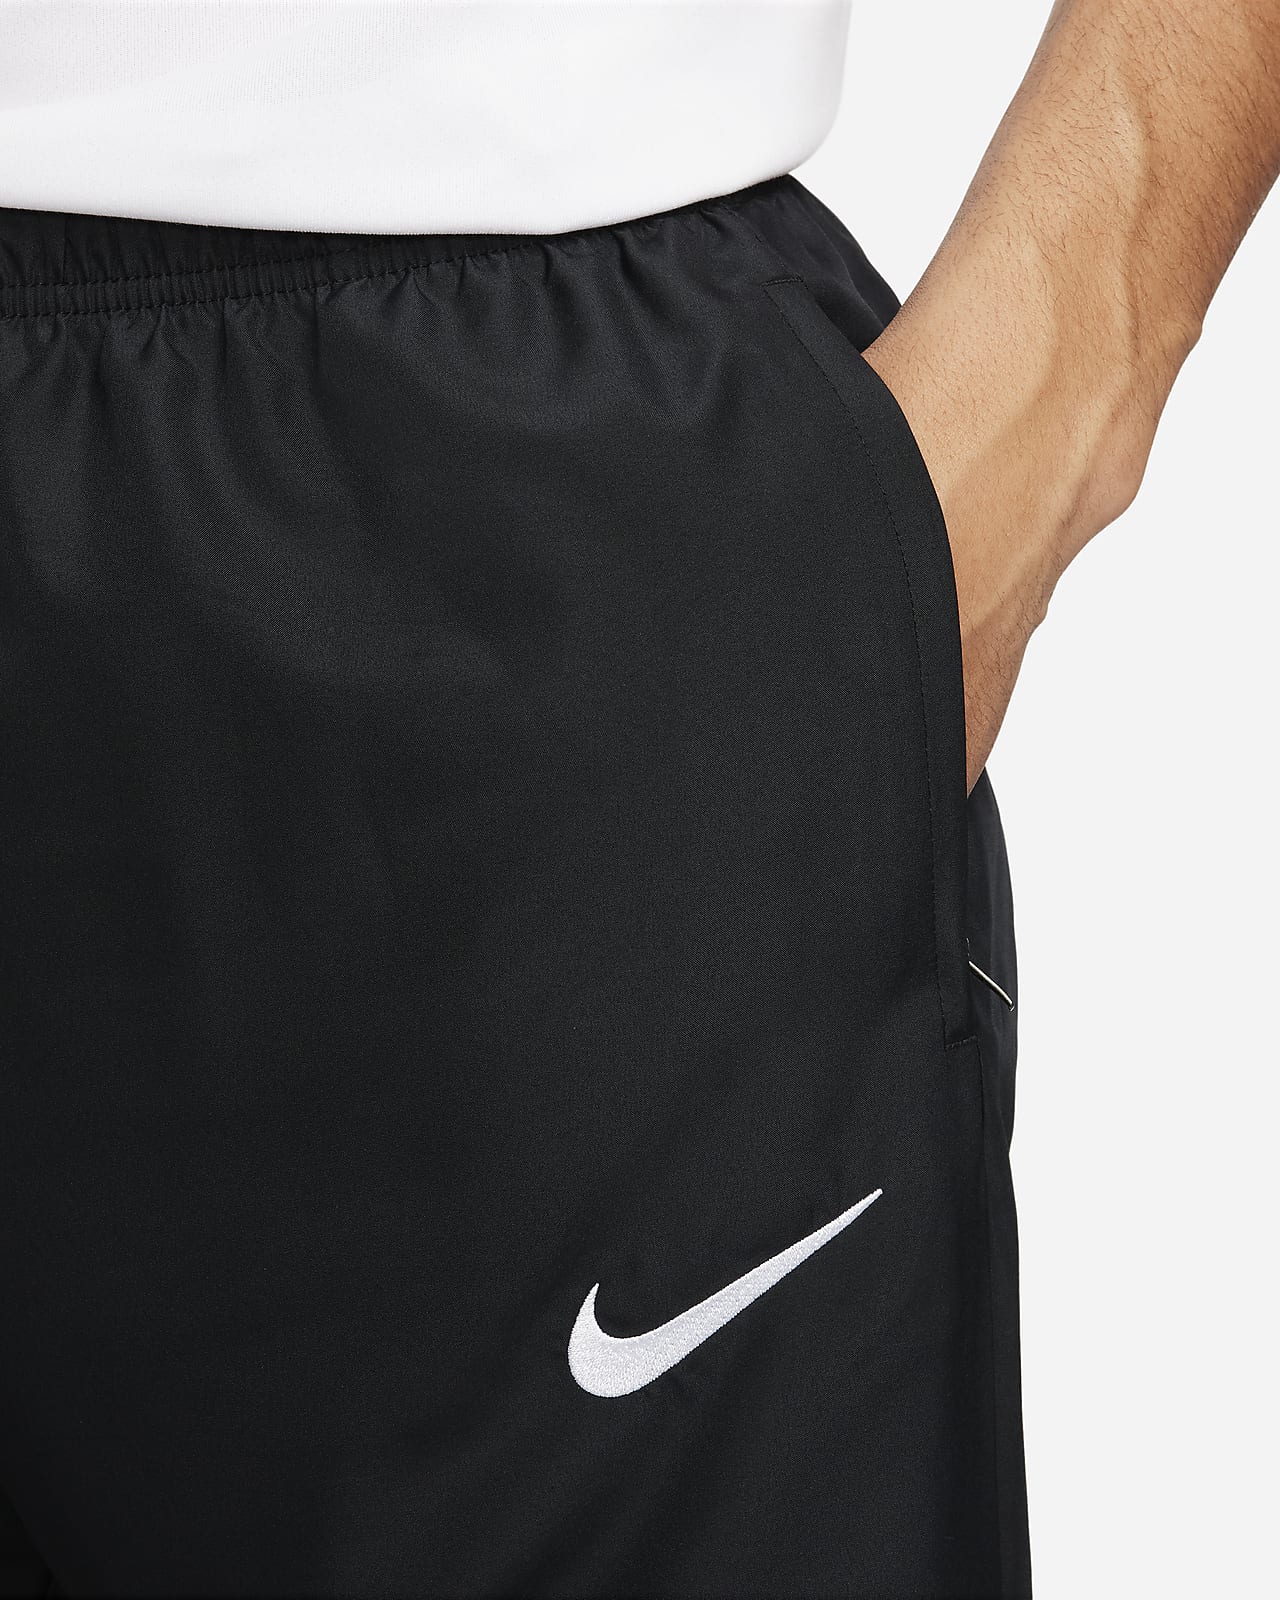 Calças homem Adidas calças Nike futebol Dri Fit fato treino joggers Vila  Franca de Xira • OLX Portugal